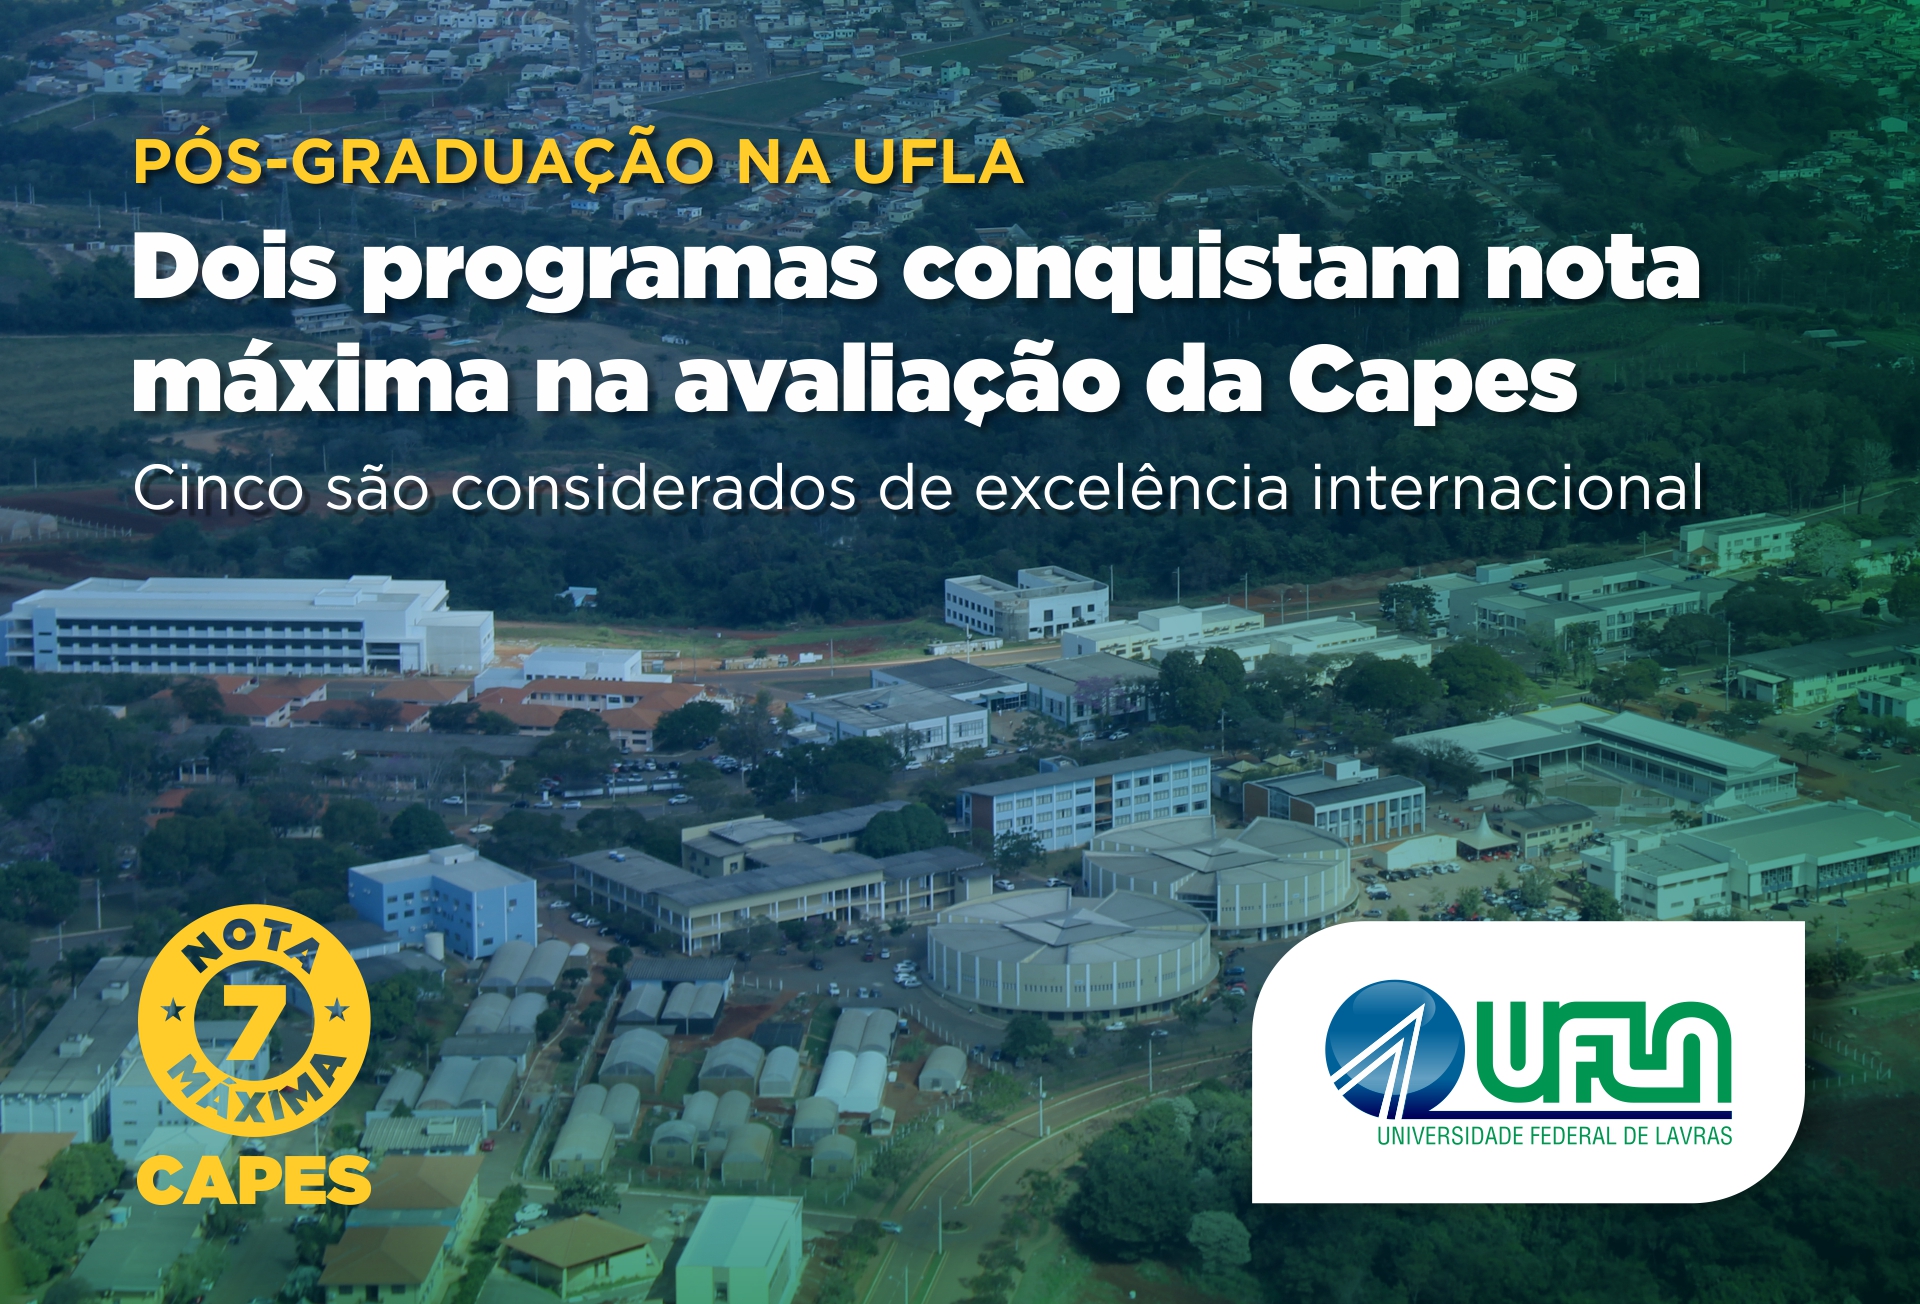 UEMA  Avaliação Quadrienal da CAPES: Programa de Pós-Graduação em